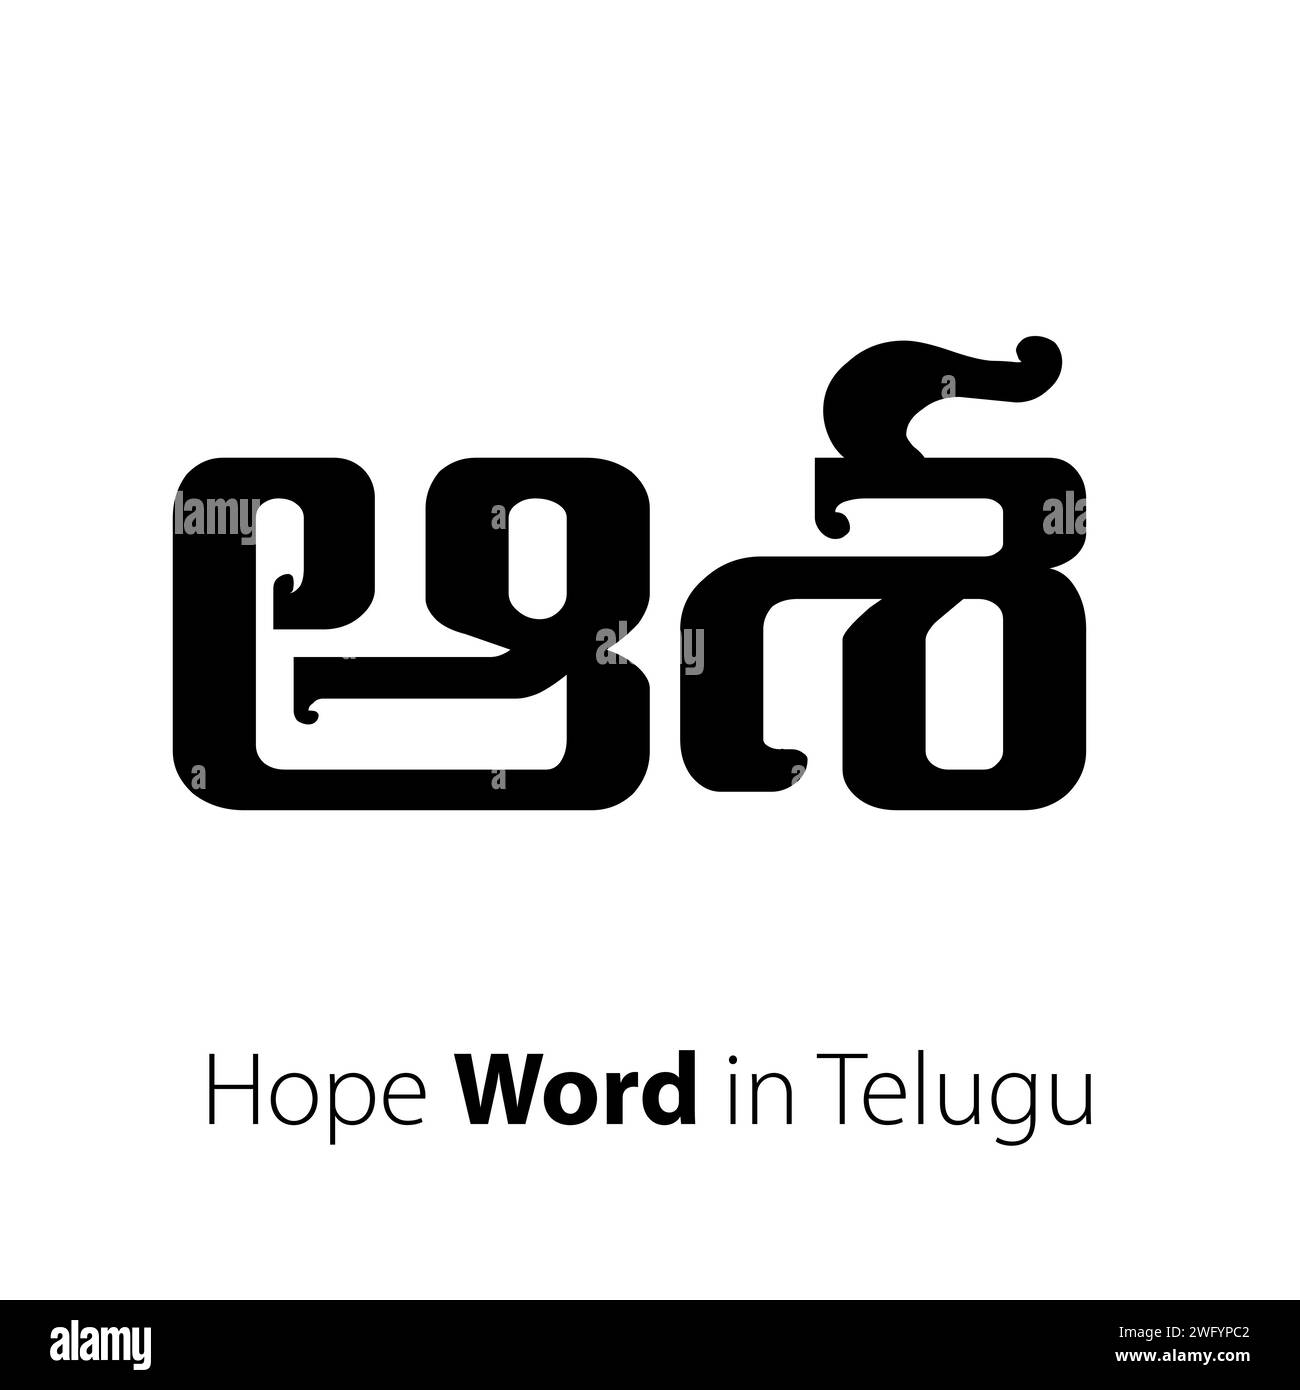 Dieser Vektor ist für Menschen gedacht, die Hoffnung in Telugu wünschen. Ein „Hoffnung“-Wortvektor verkörpert Optimismus, Vorausschau und Positives. Stock Vektor